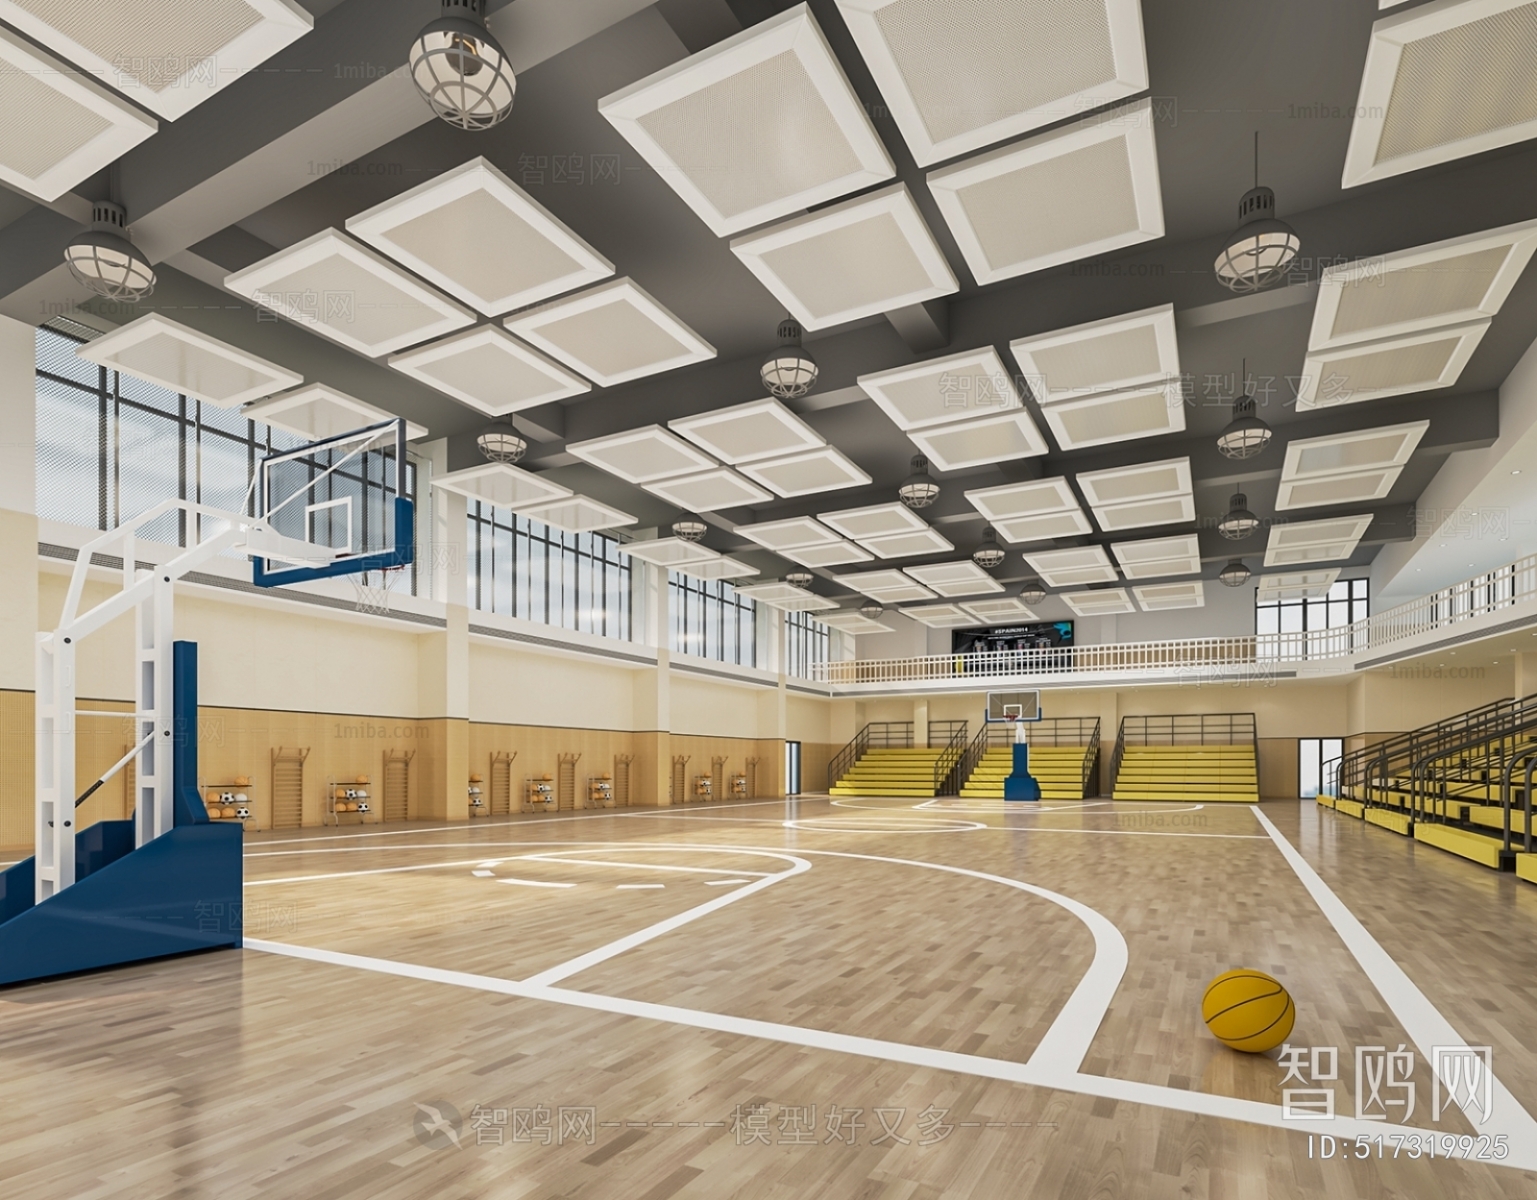 Modern Basketball Arena